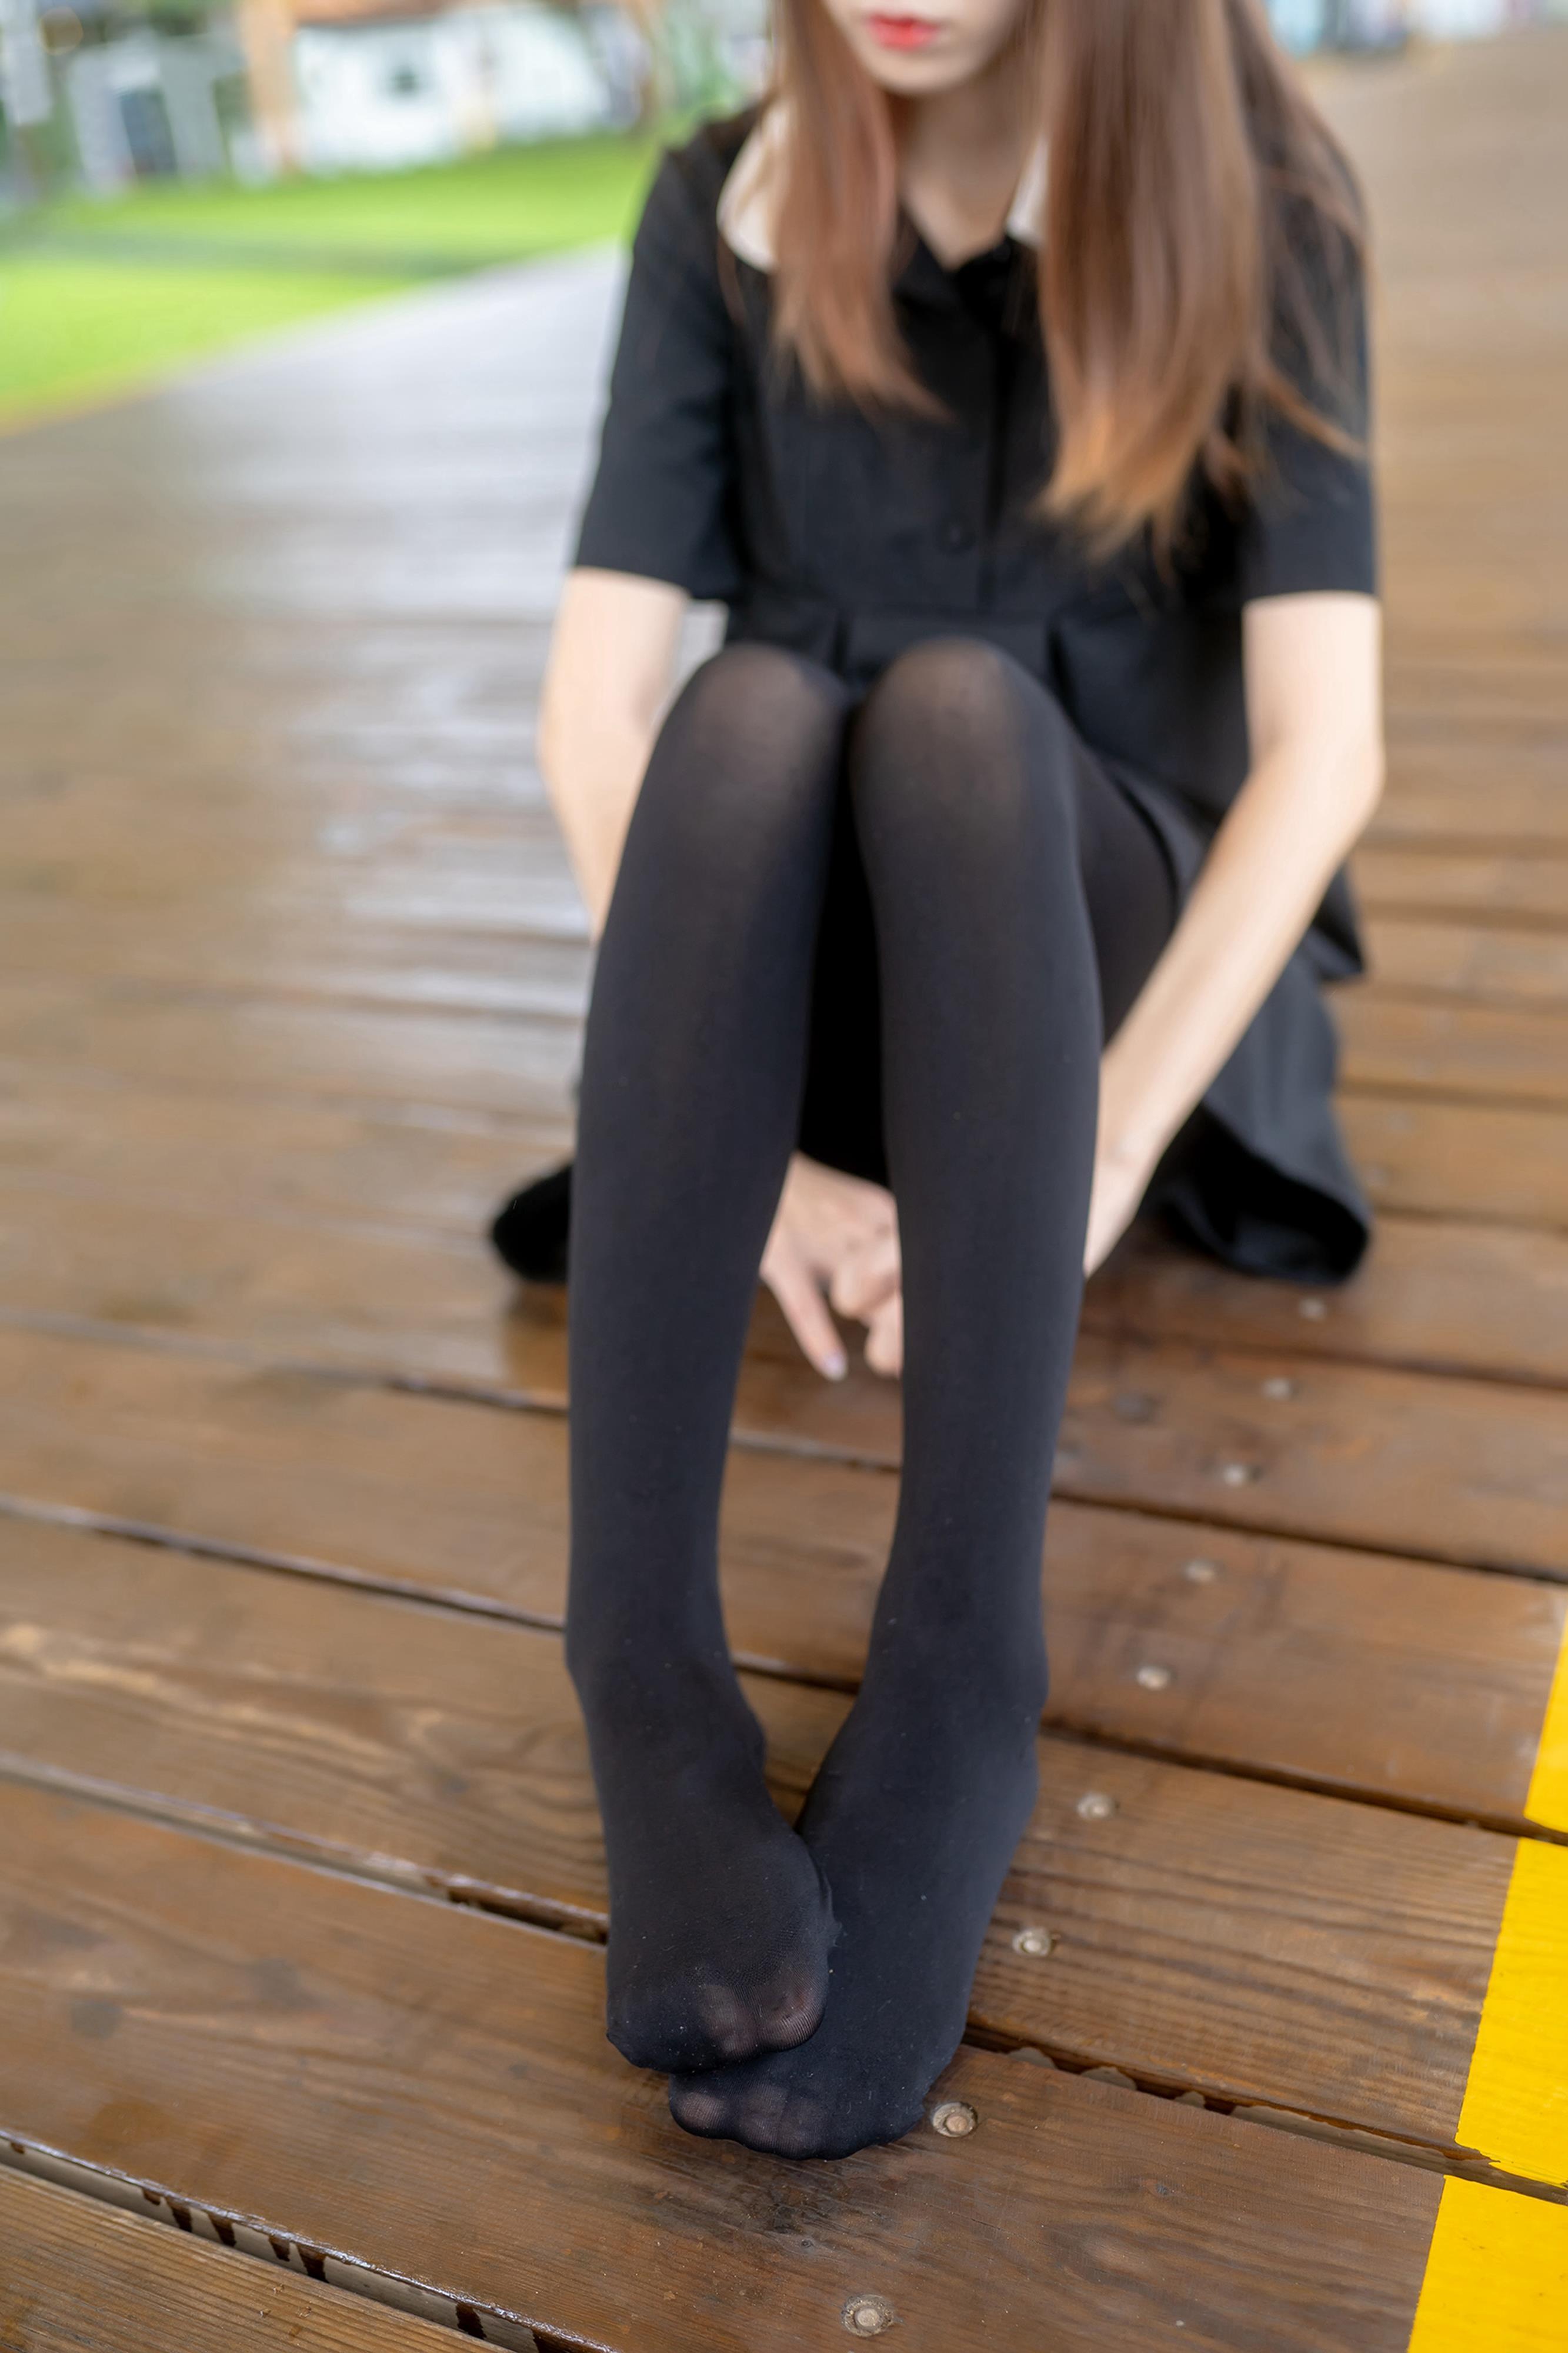 [风之领域]NO.064 性感小萝莉 黑色连衣裙加黑色丝袜美腿私房写真集,